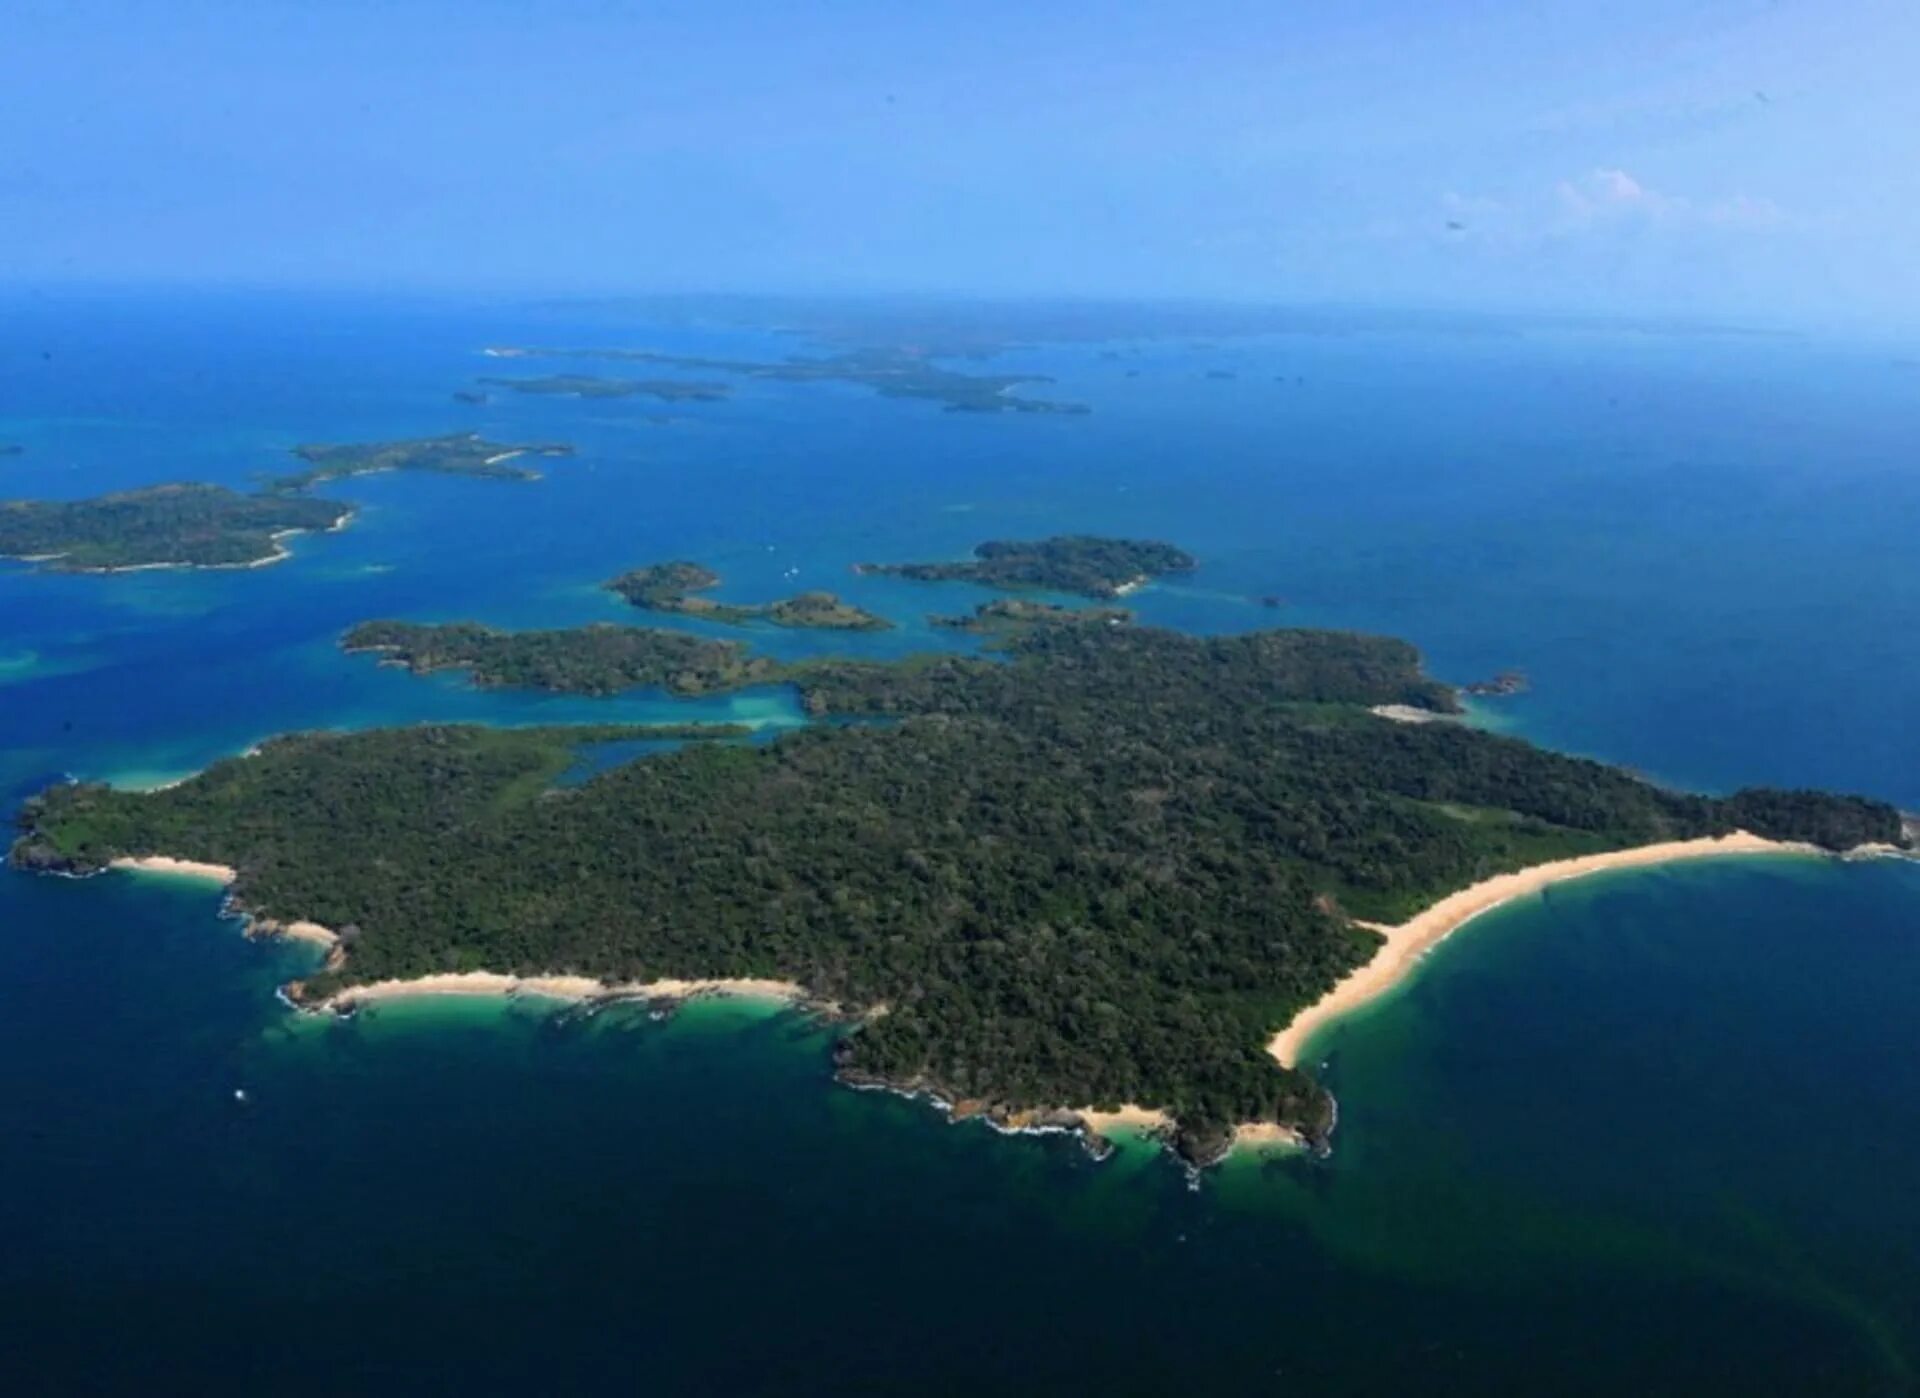 Второй остров в мире. Остров Рей Панама. Площади островов. Остров 10 кв км. Квадратный остров.